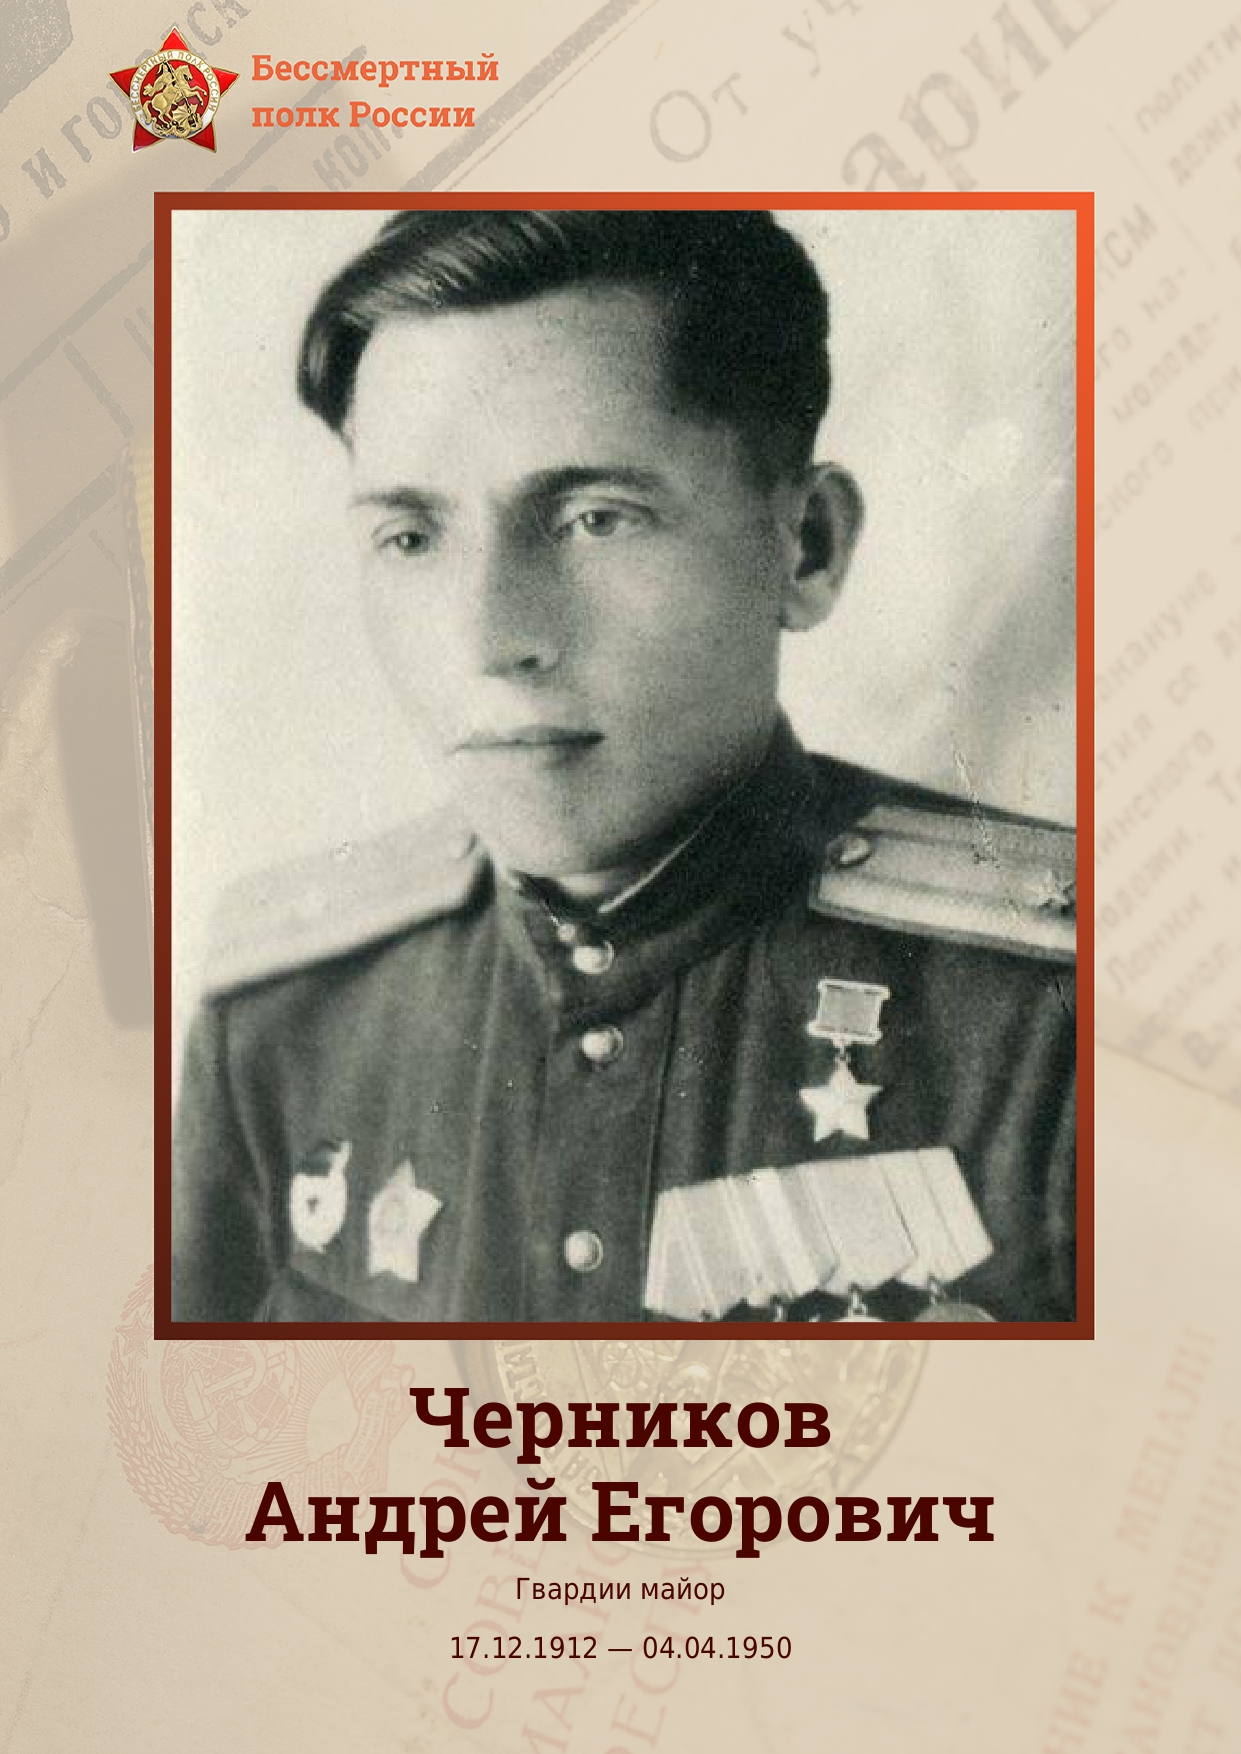 Сегодня в рамках акции «Бессмертный полк онлайн» расскажем об Андрее Егоровиче Черникове.